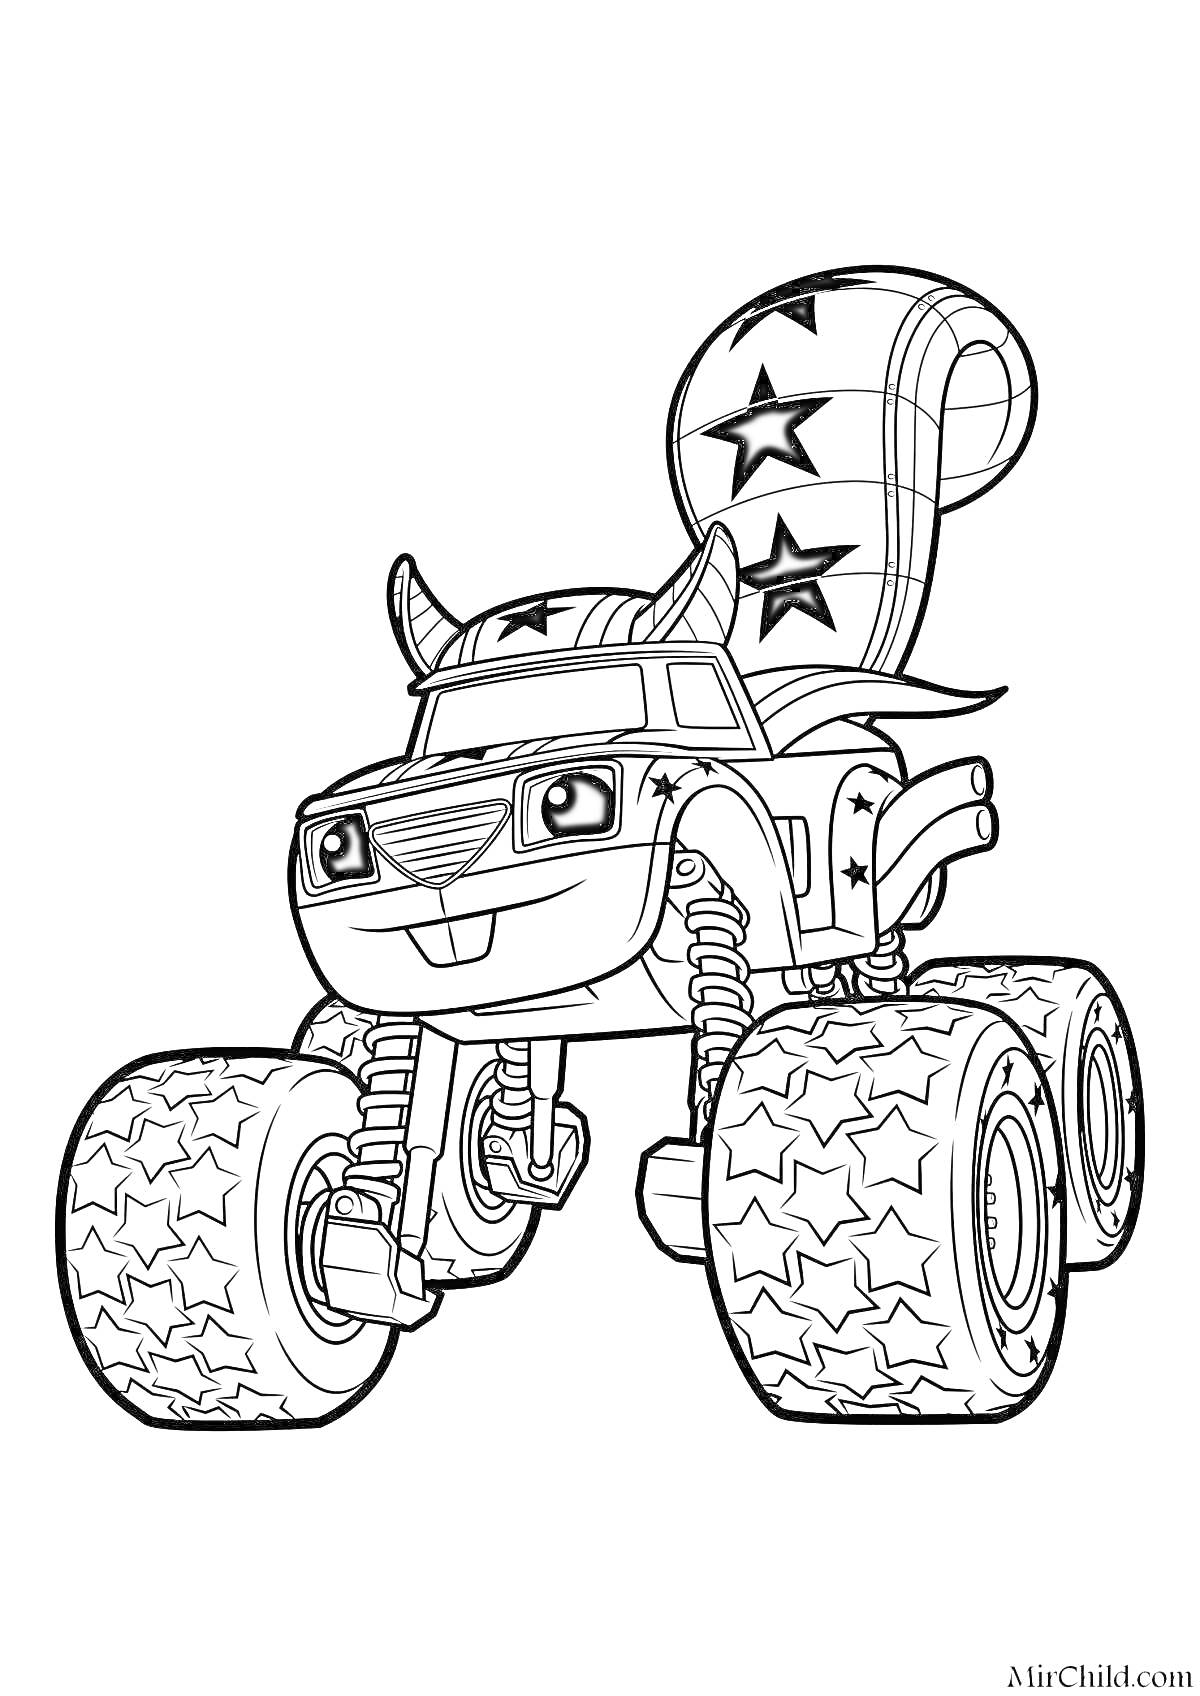 Раскраска Гоночная машина-смельчак с ушами и хвостом с узором звезд